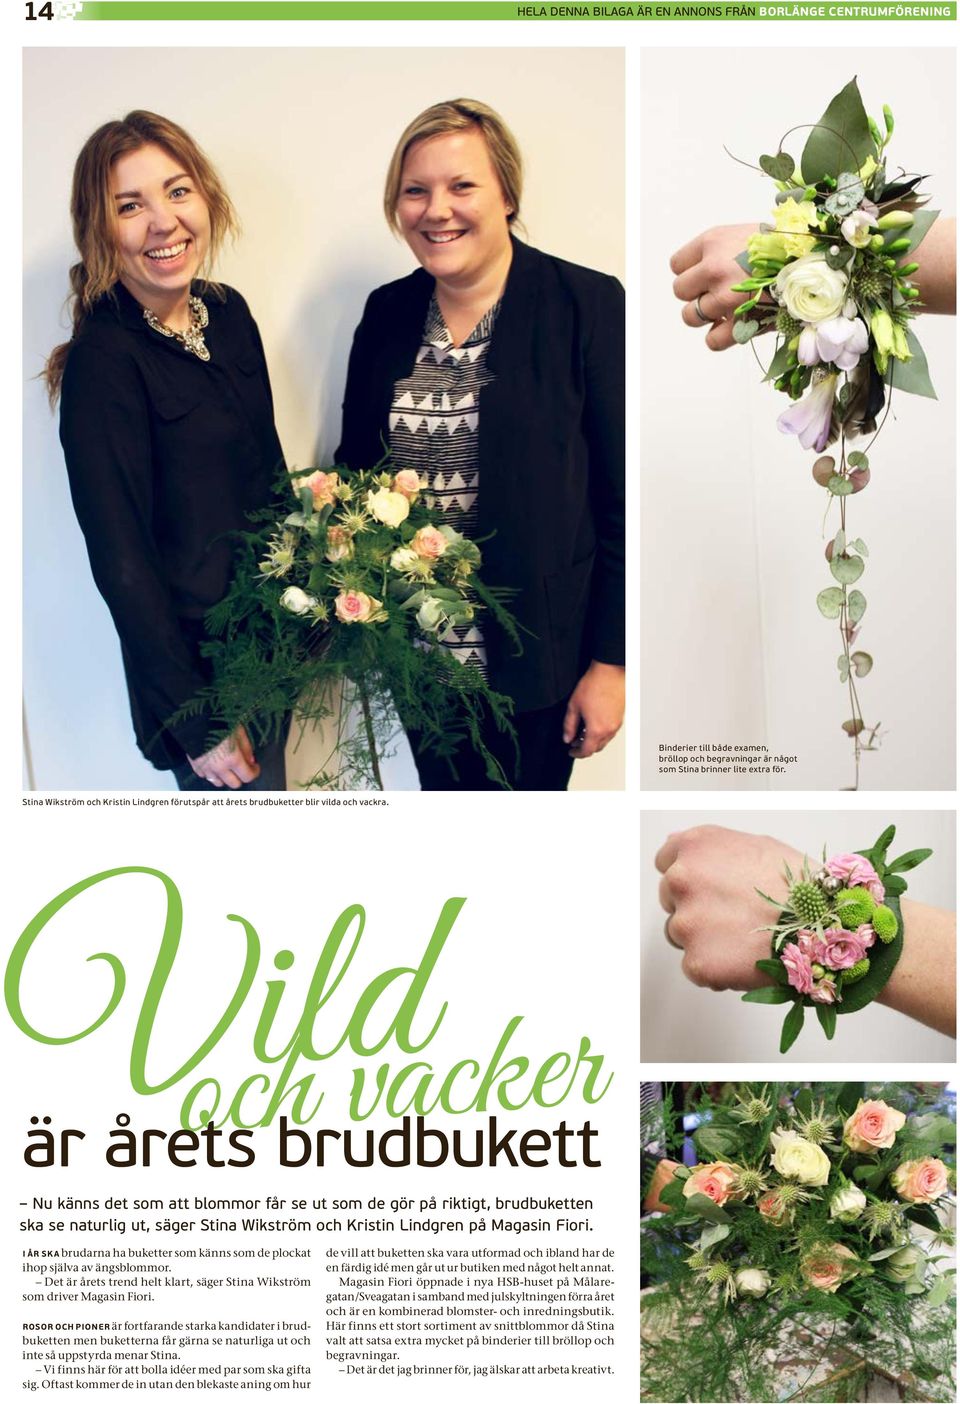 Vild och vacker är årets brudbukett Nu känns det som att blommor får se ut som de gör på riktigt, brudbuketten ska se naturlig ut, säger Stina Wikström och Kristin Lindgren på Magasin Fiori.